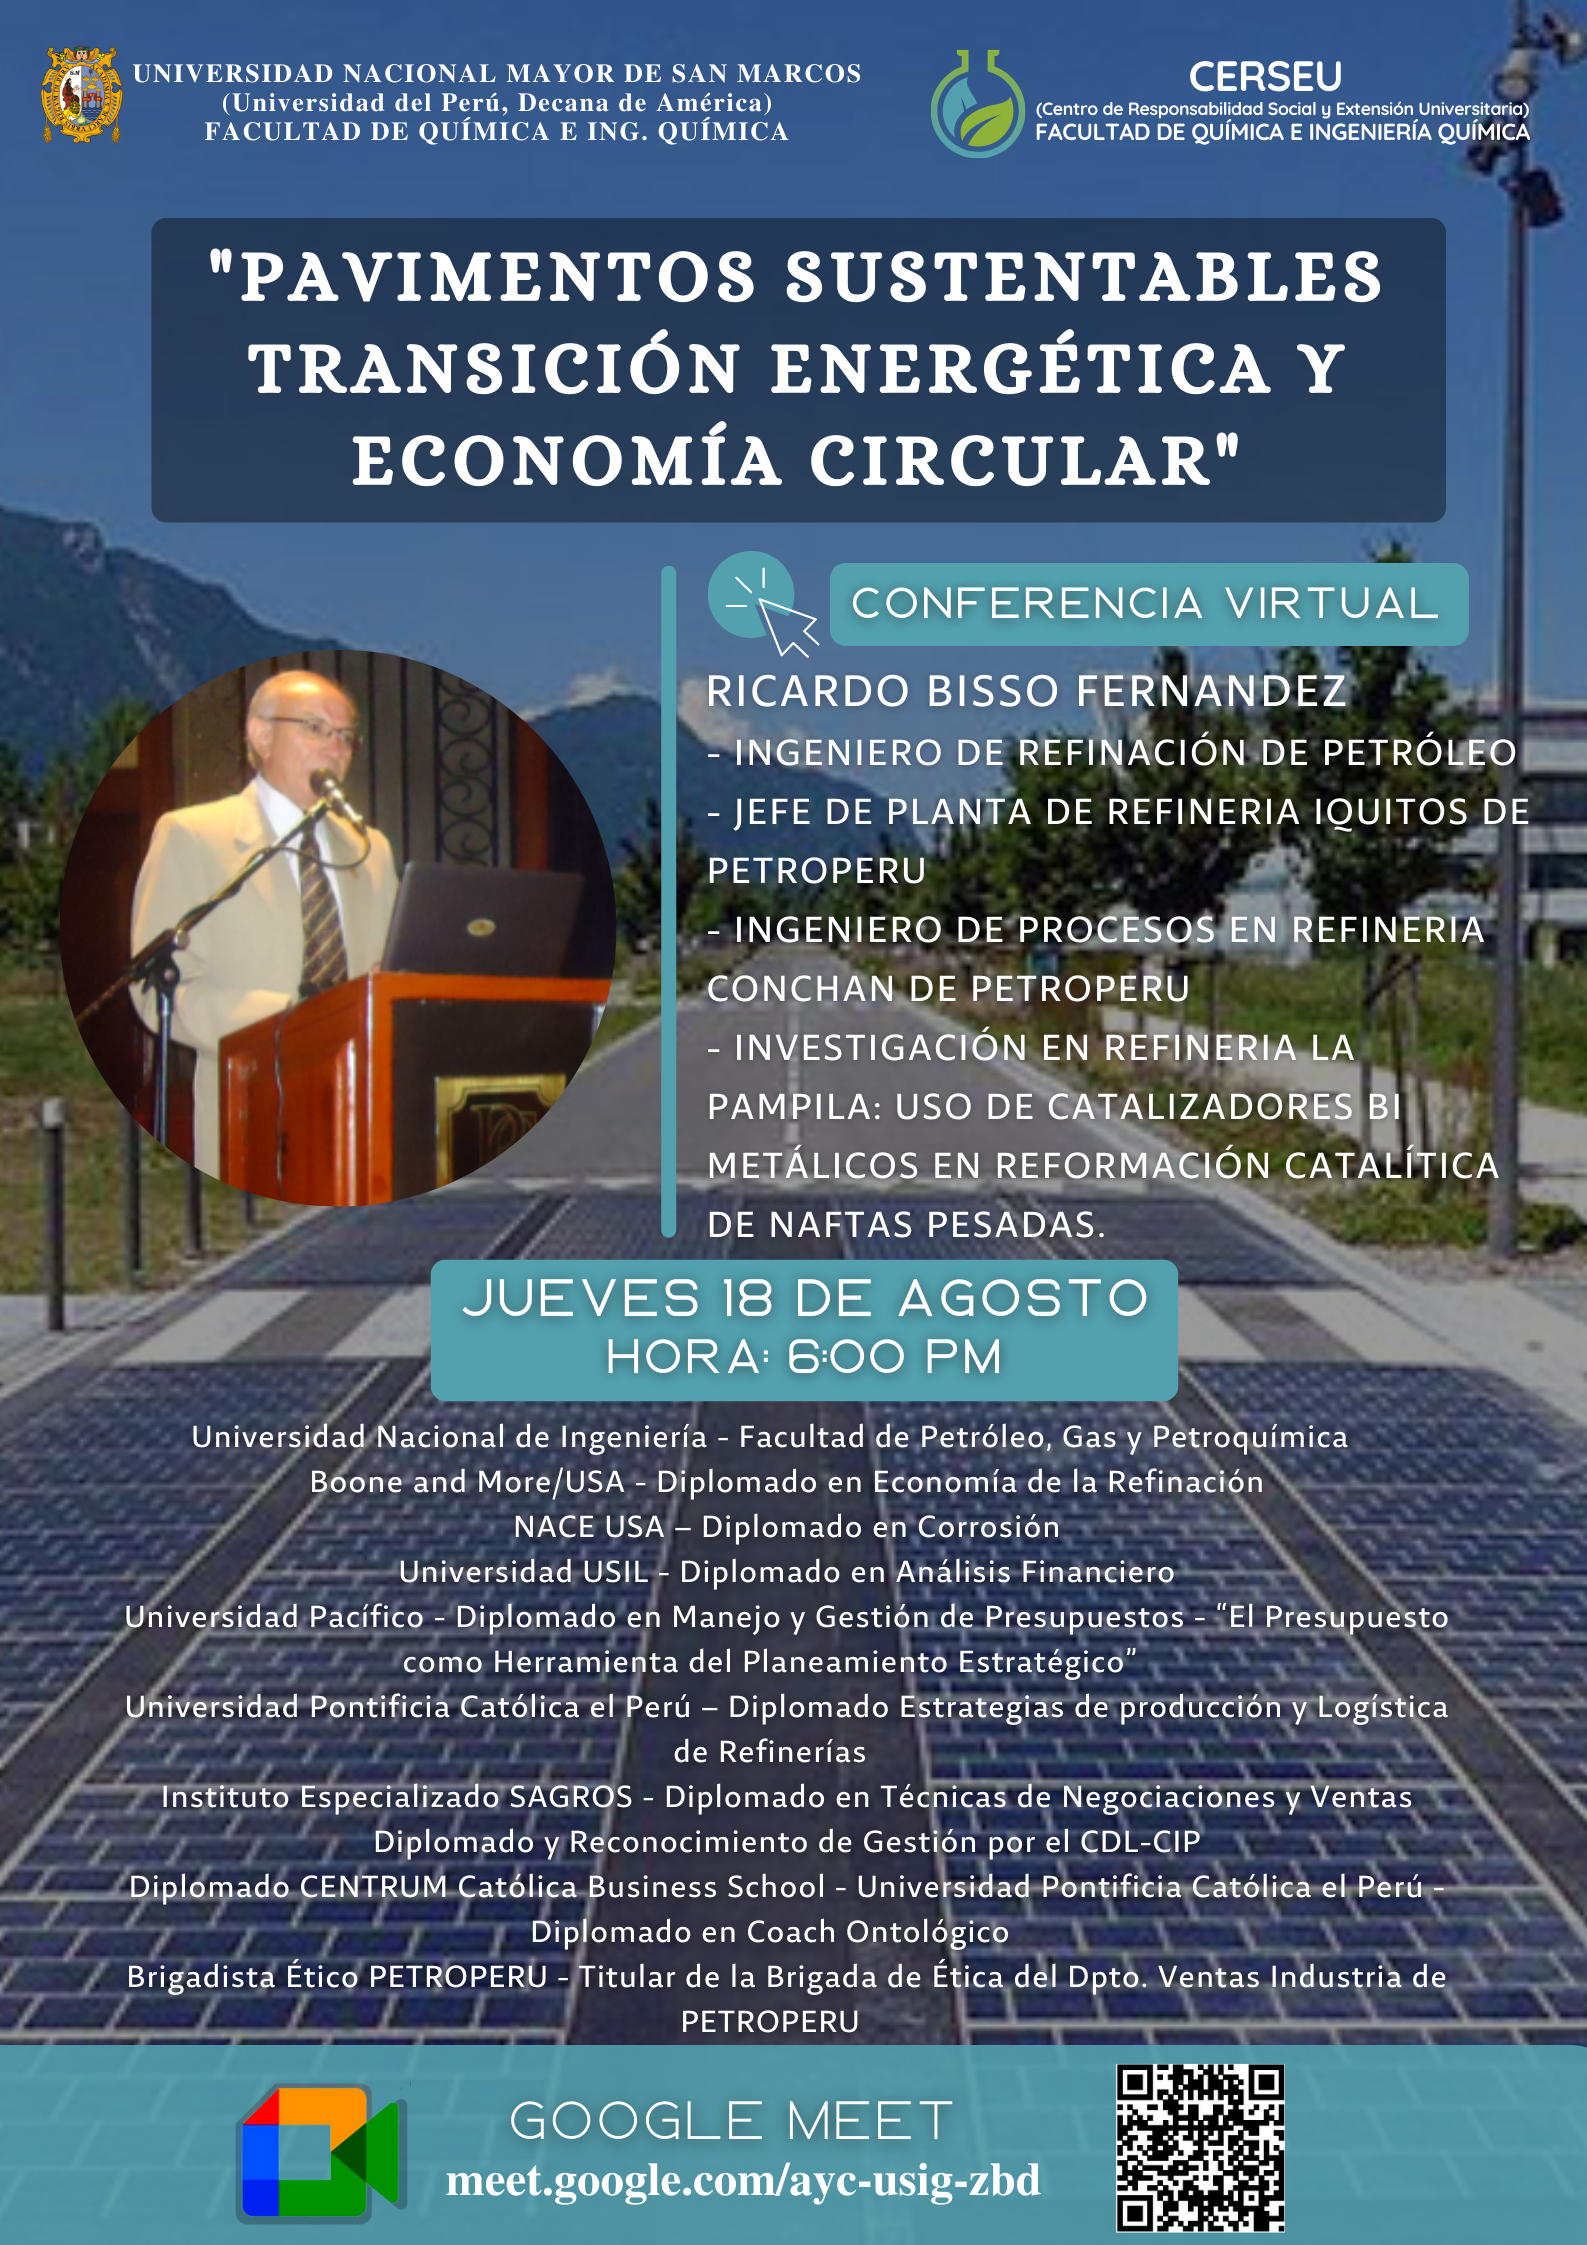 CONFERENCIA VIRTUAL “Pavimentos Sustentables, Transición Energética y Economía Circular”